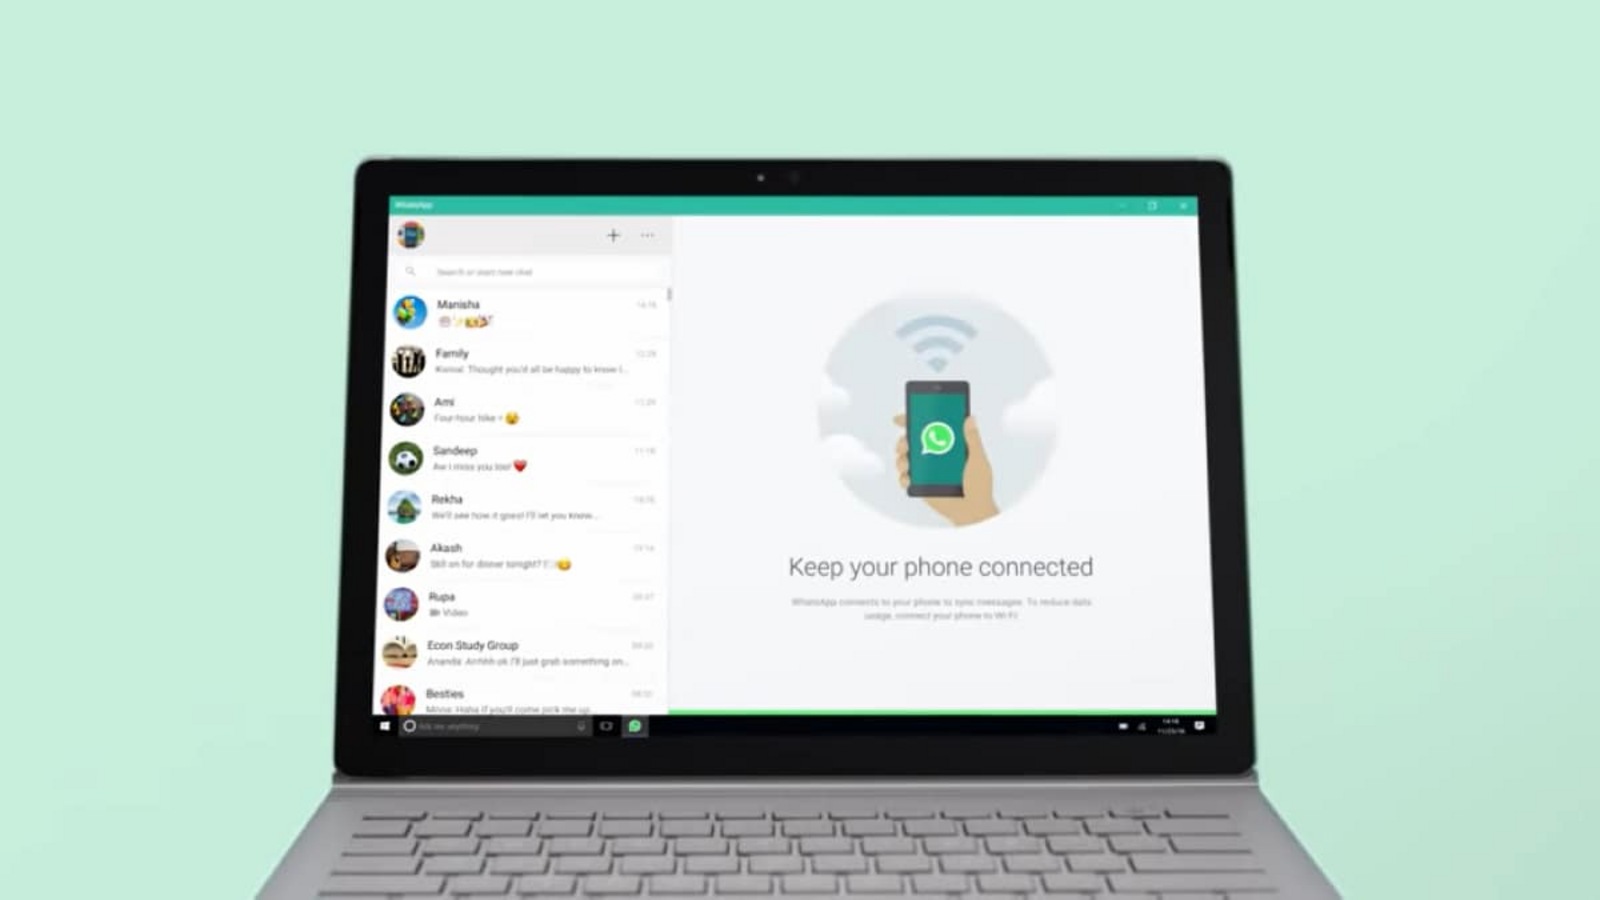 Отправьте себе сообщение в WhatsApp: теперь вы можете сделать это на своем ПК с Windows